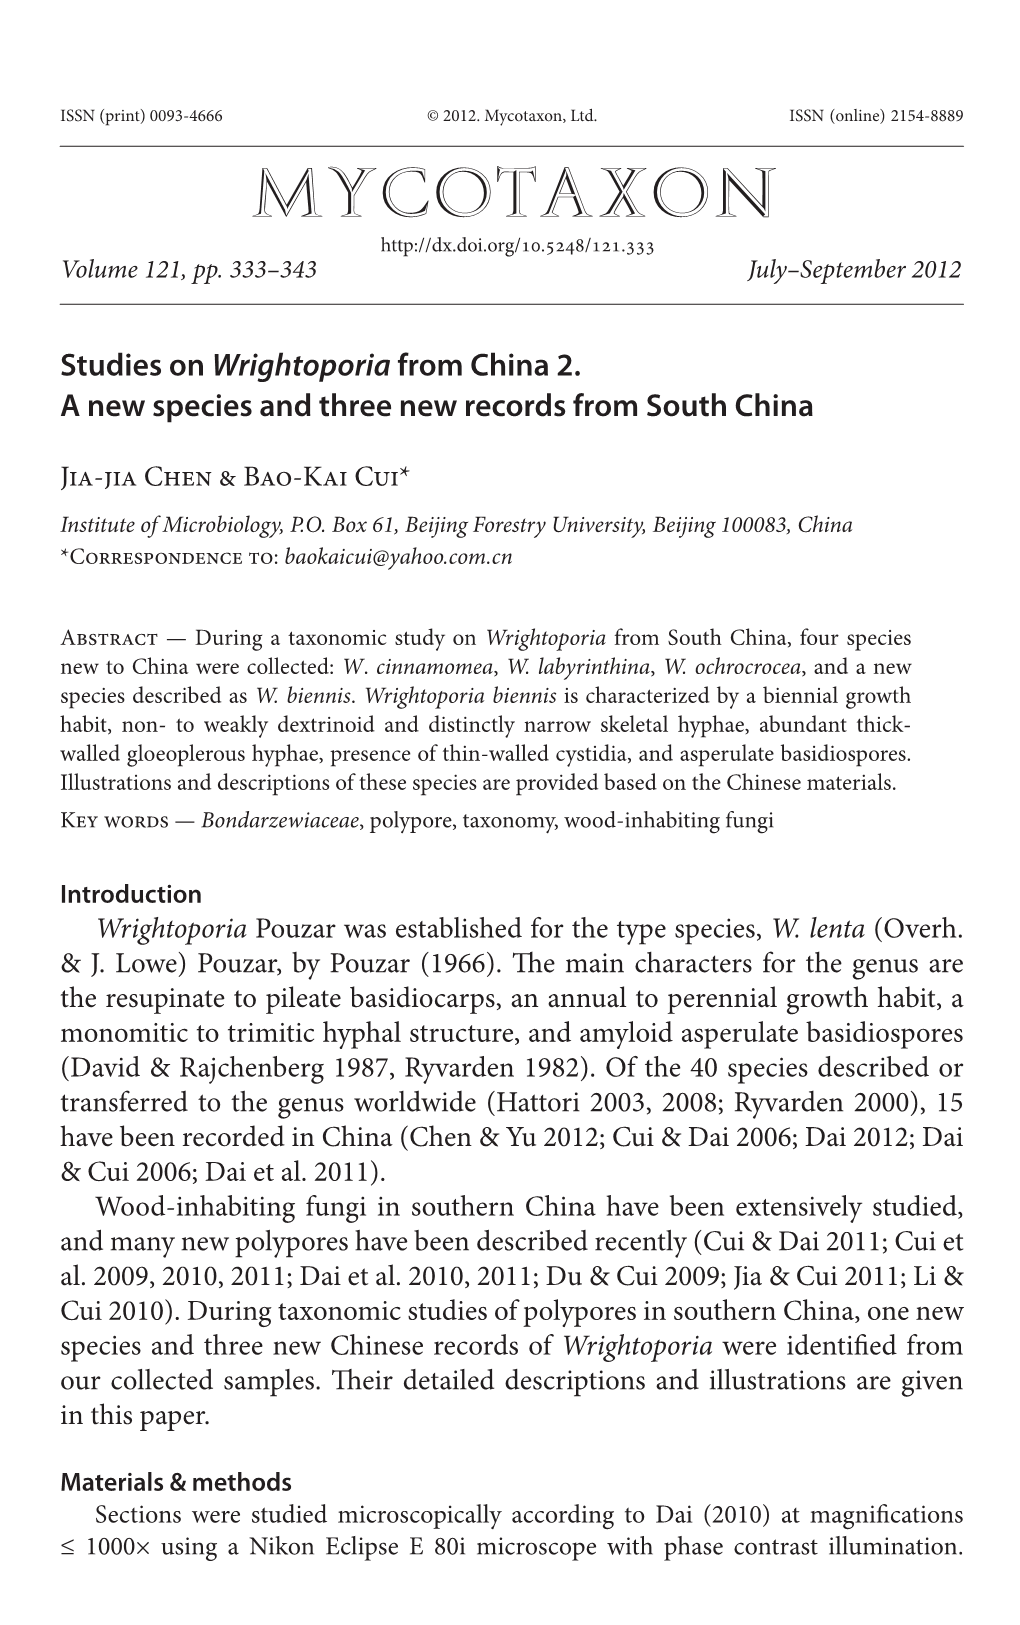 Studies on Wrightoporia from China 2